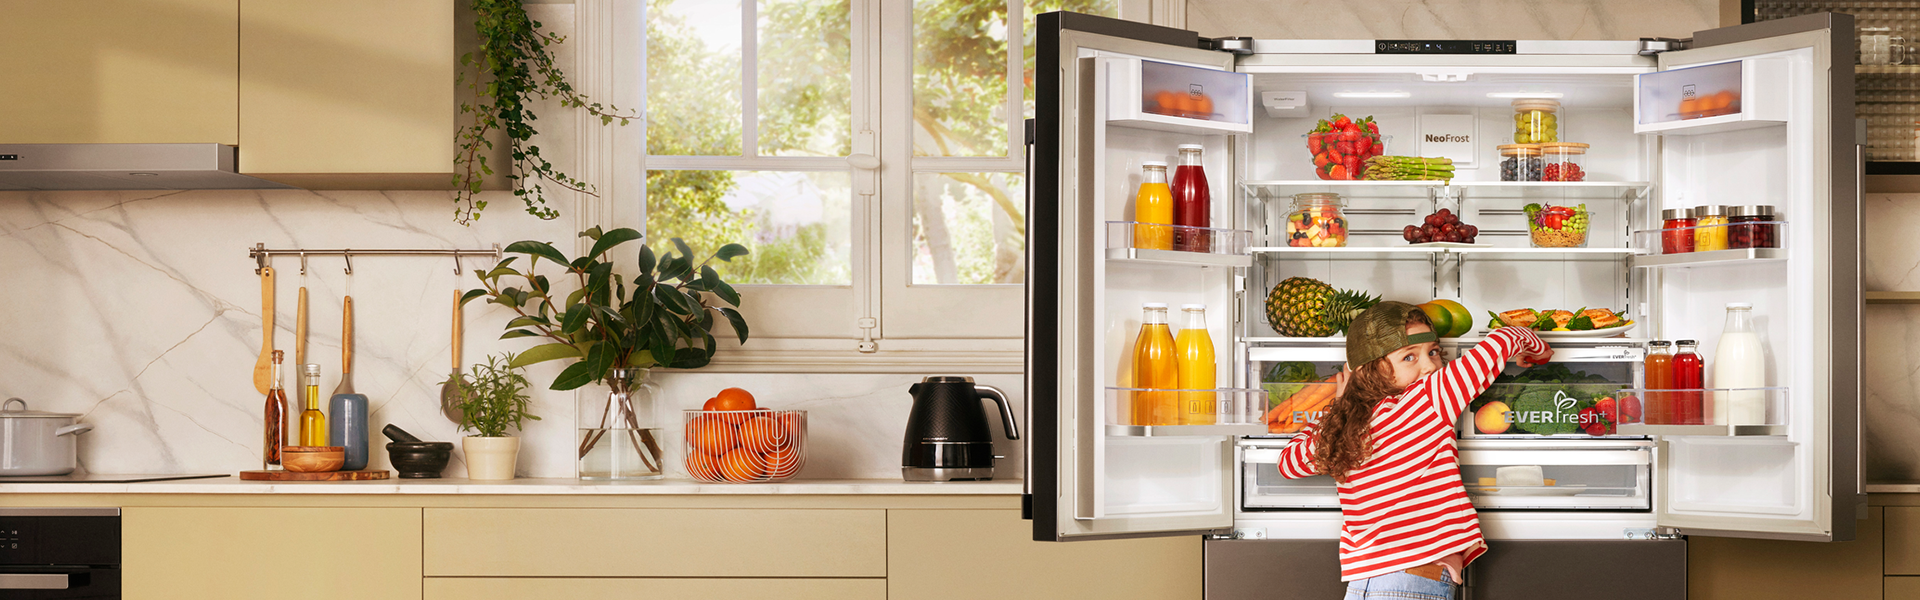 Frigo américain 4 portes beko  Locker storage, Room colors, Refrigerator